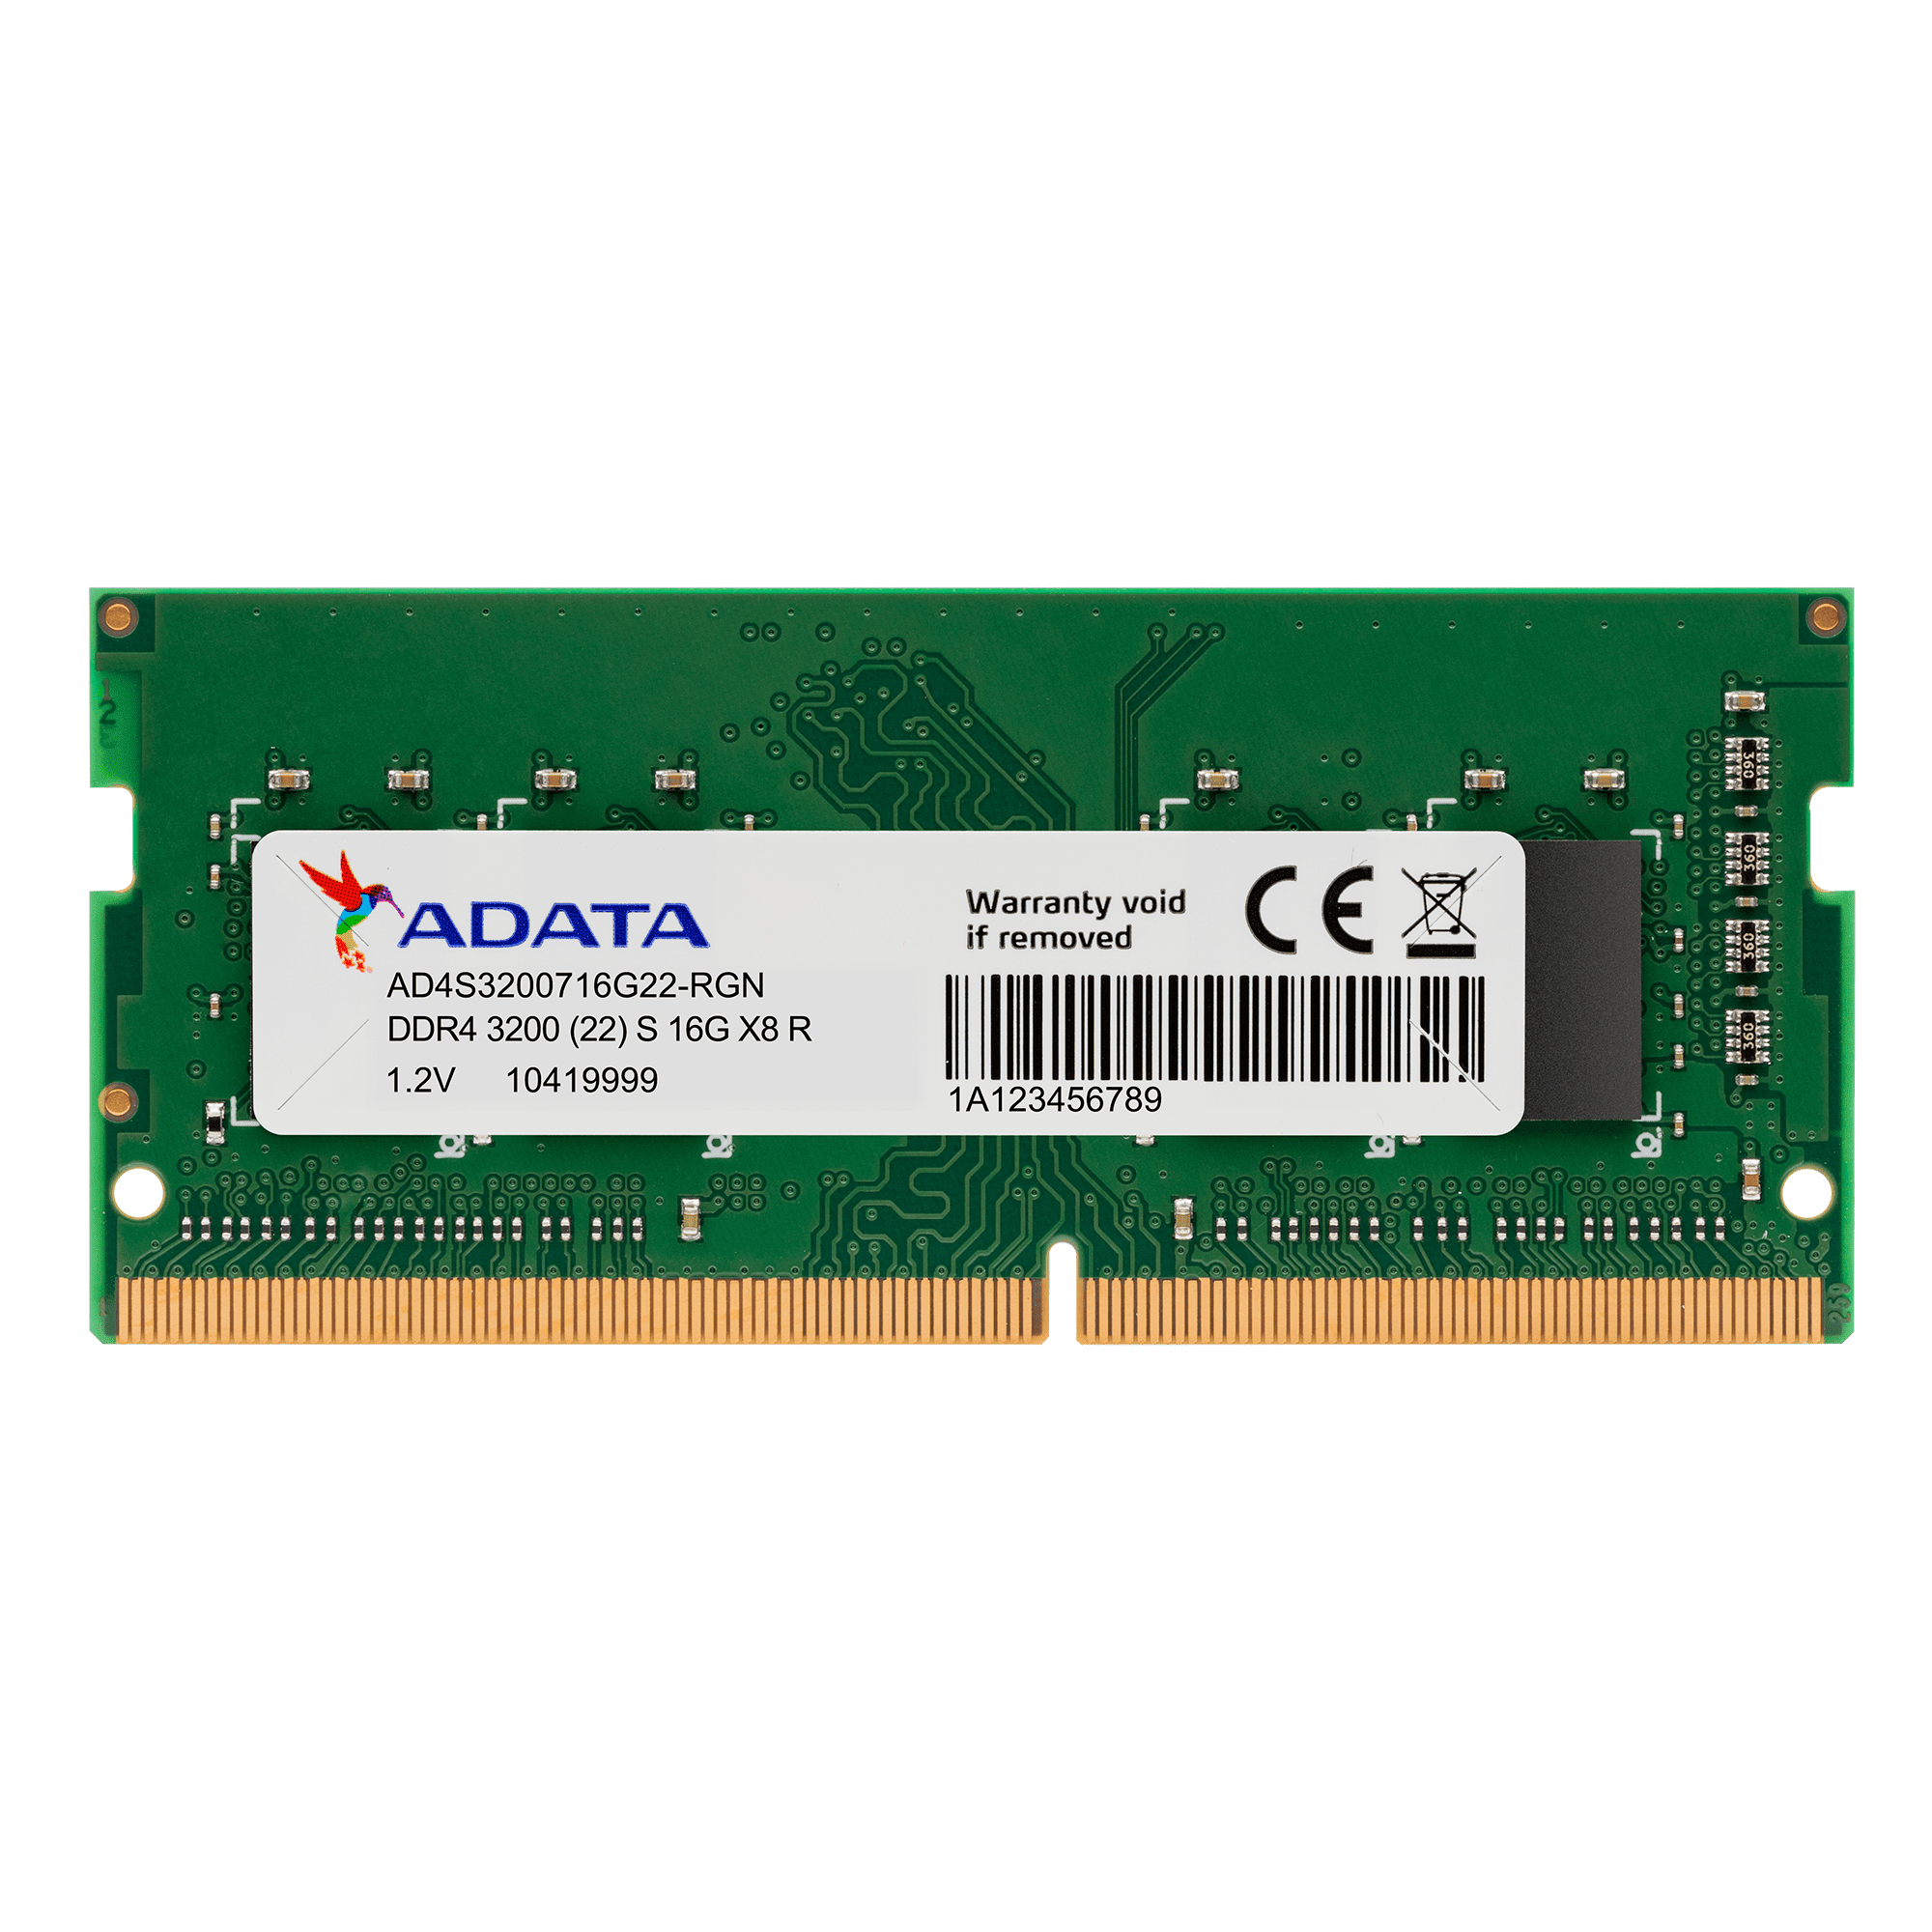 Serena Anestésico granizo ADATA Premier Series 8GB DDR4 SODIMM